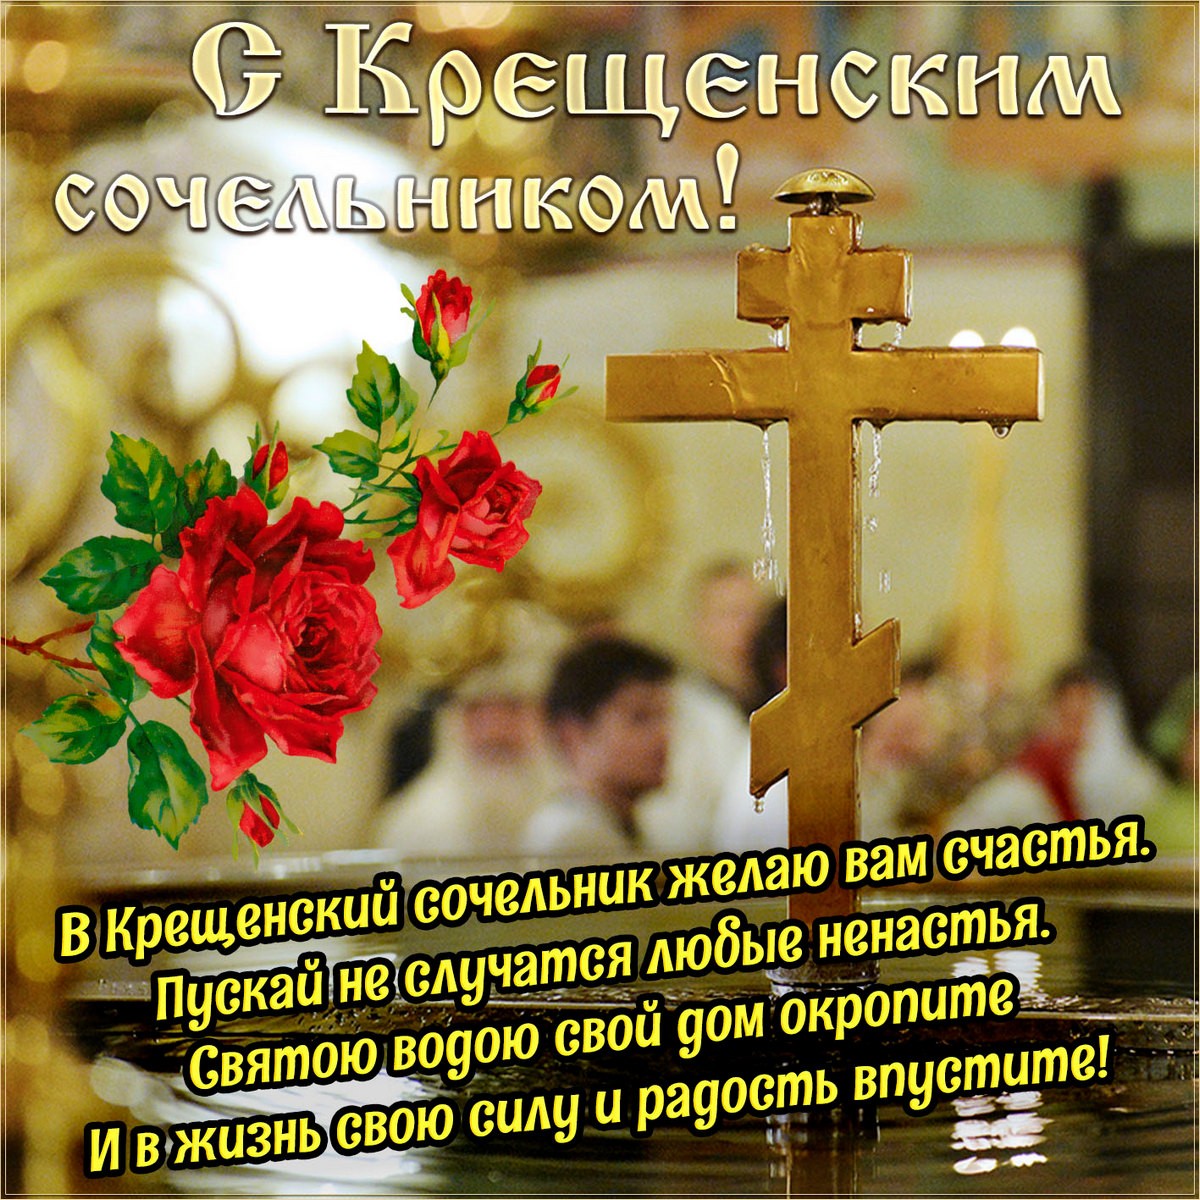 18 января - Крещенский сочельник или "Голодная кутья" - традиции и приметы праздника, что можно и что нельзя делать в Крещенский вечер